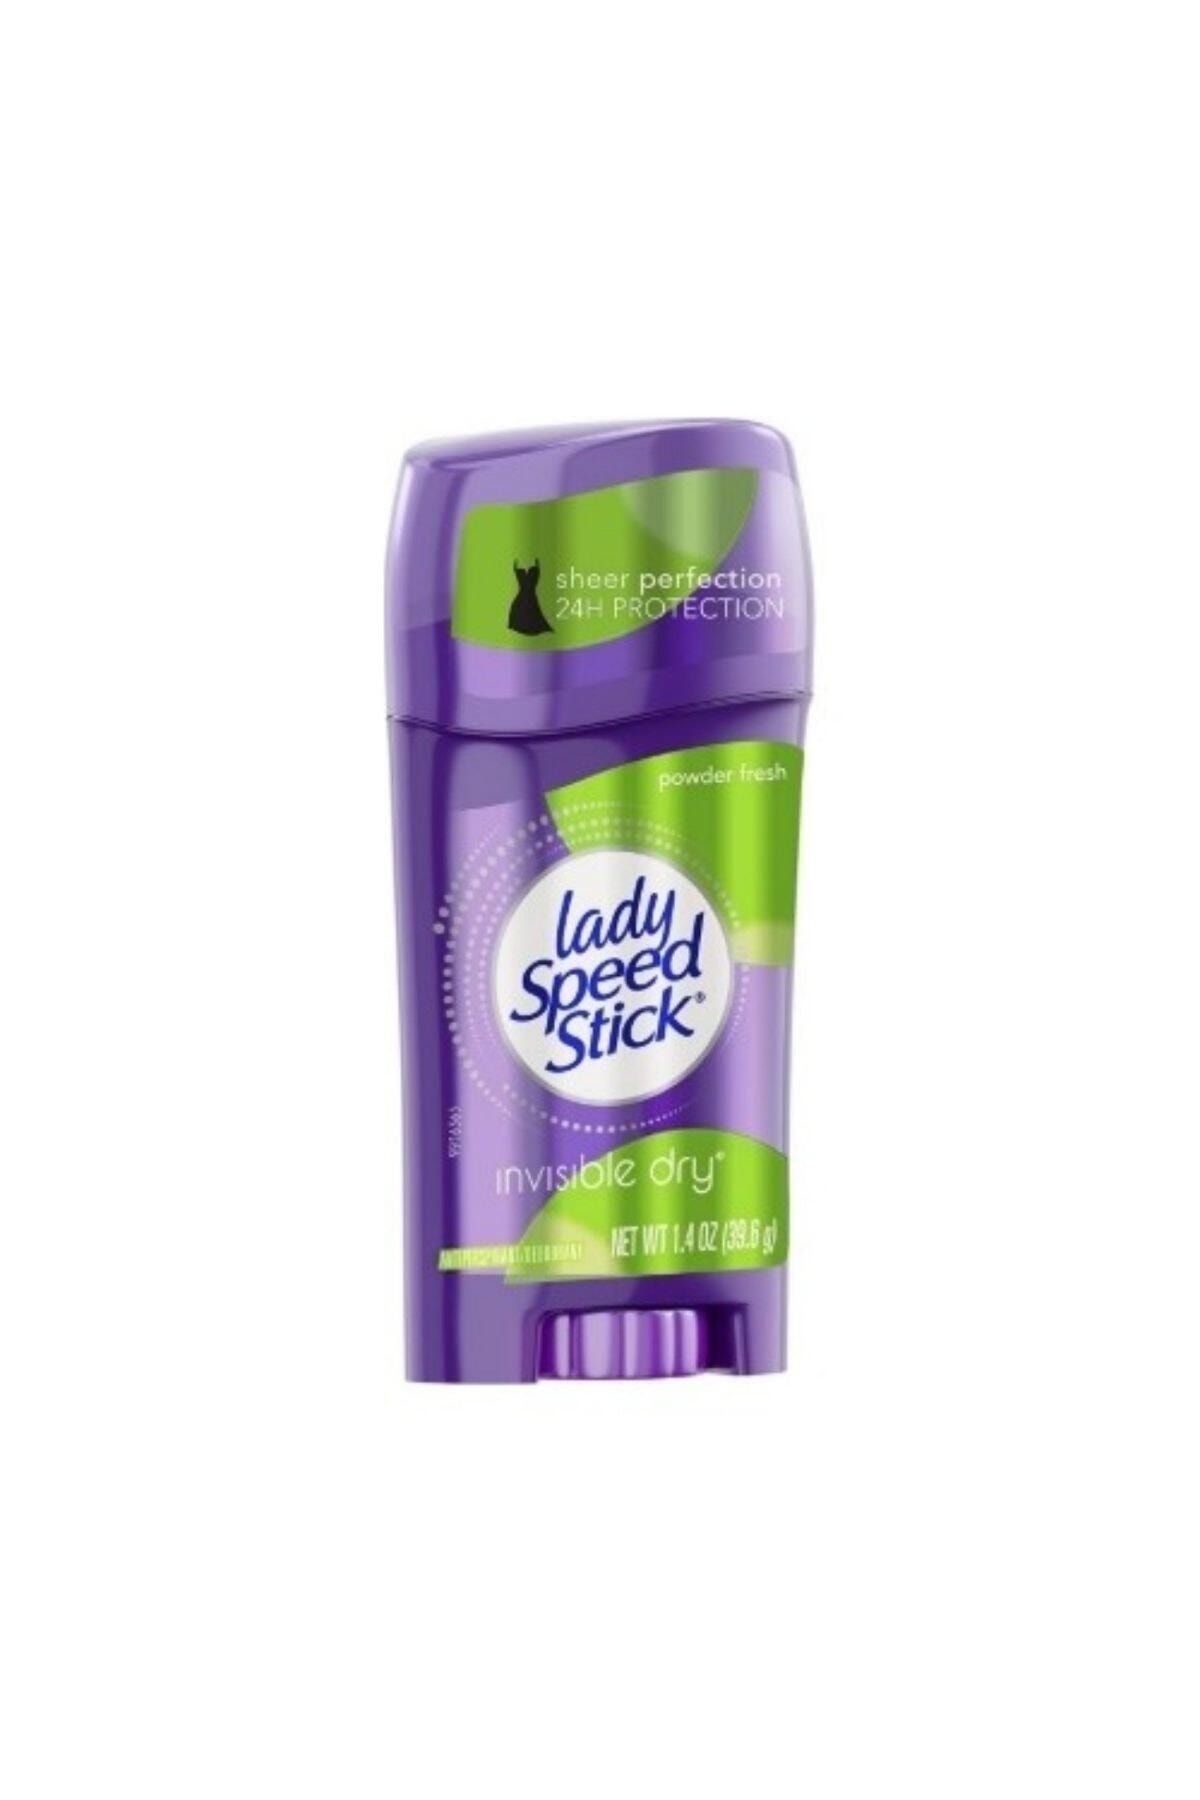 Lady Speed Kadın Deodorant - Stick Powder Fresh Invisible Dry Power 0022200963442